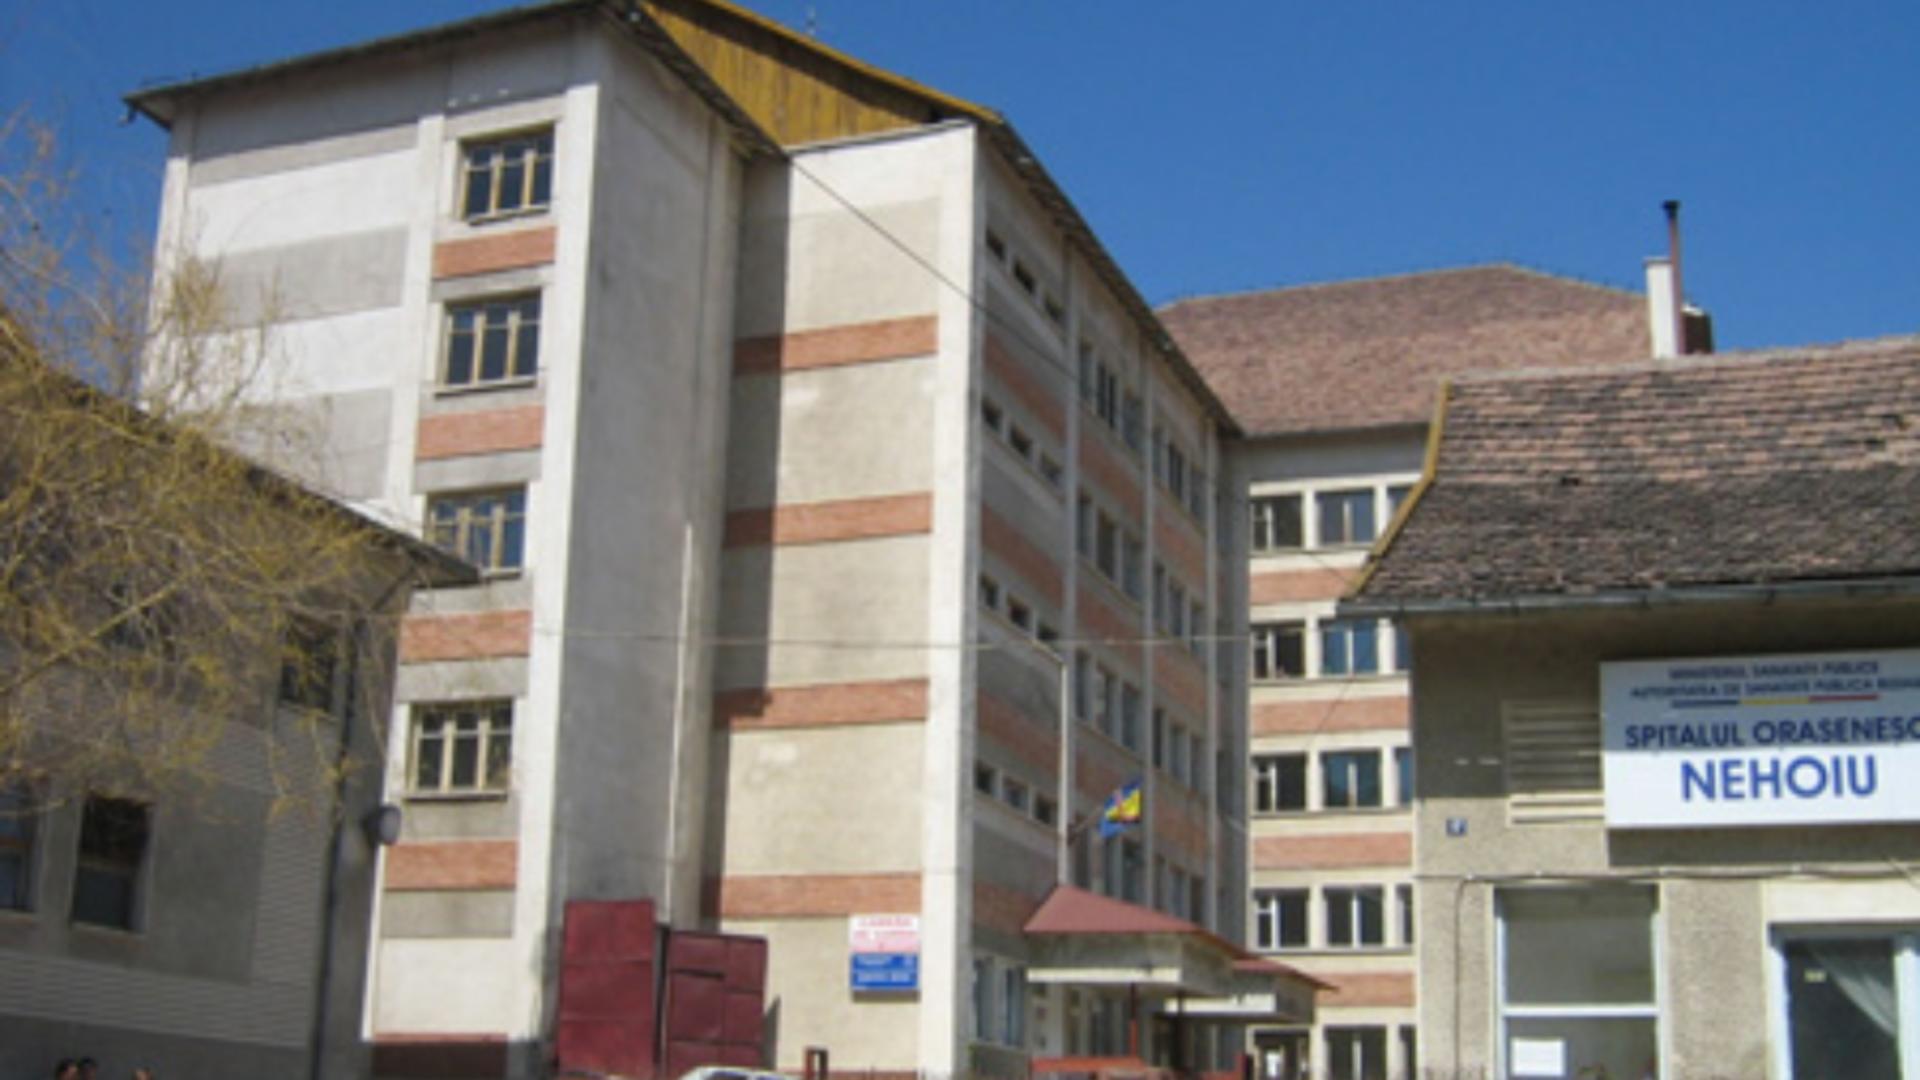 Spitalul Municipal Nehoiu